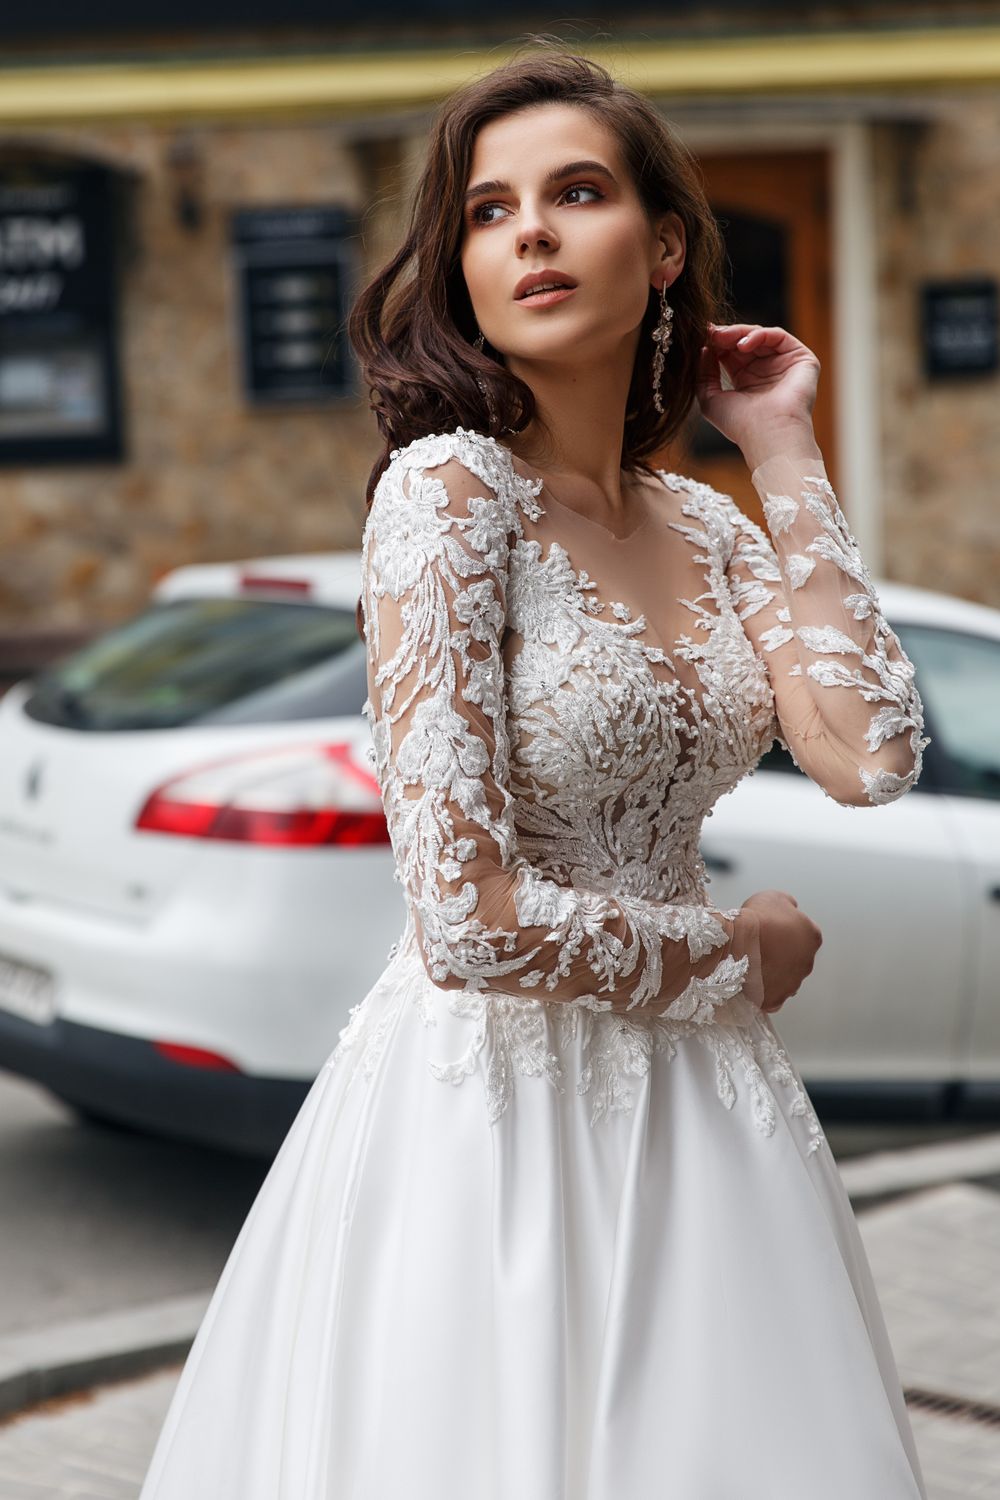 Eine Frau in einem weißen Hochzeitskleid steht vor einem Auto.